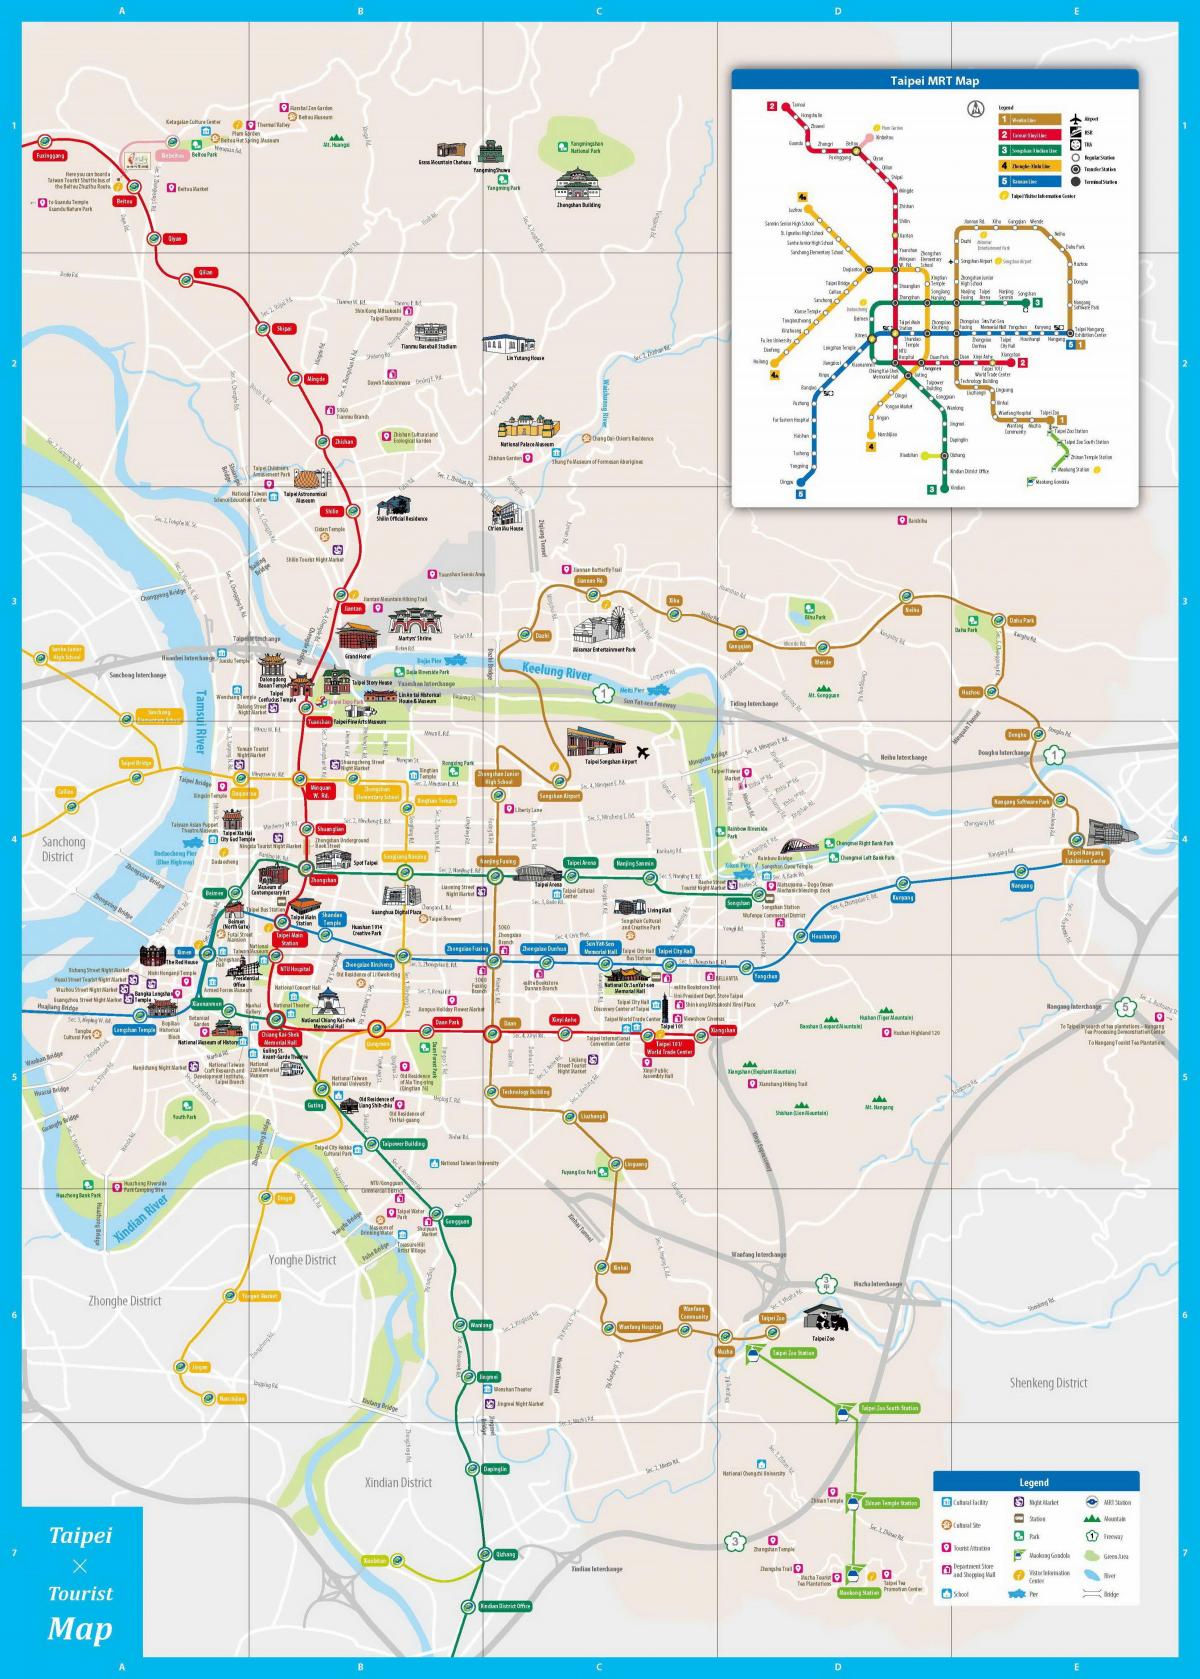 Taipei transportation map